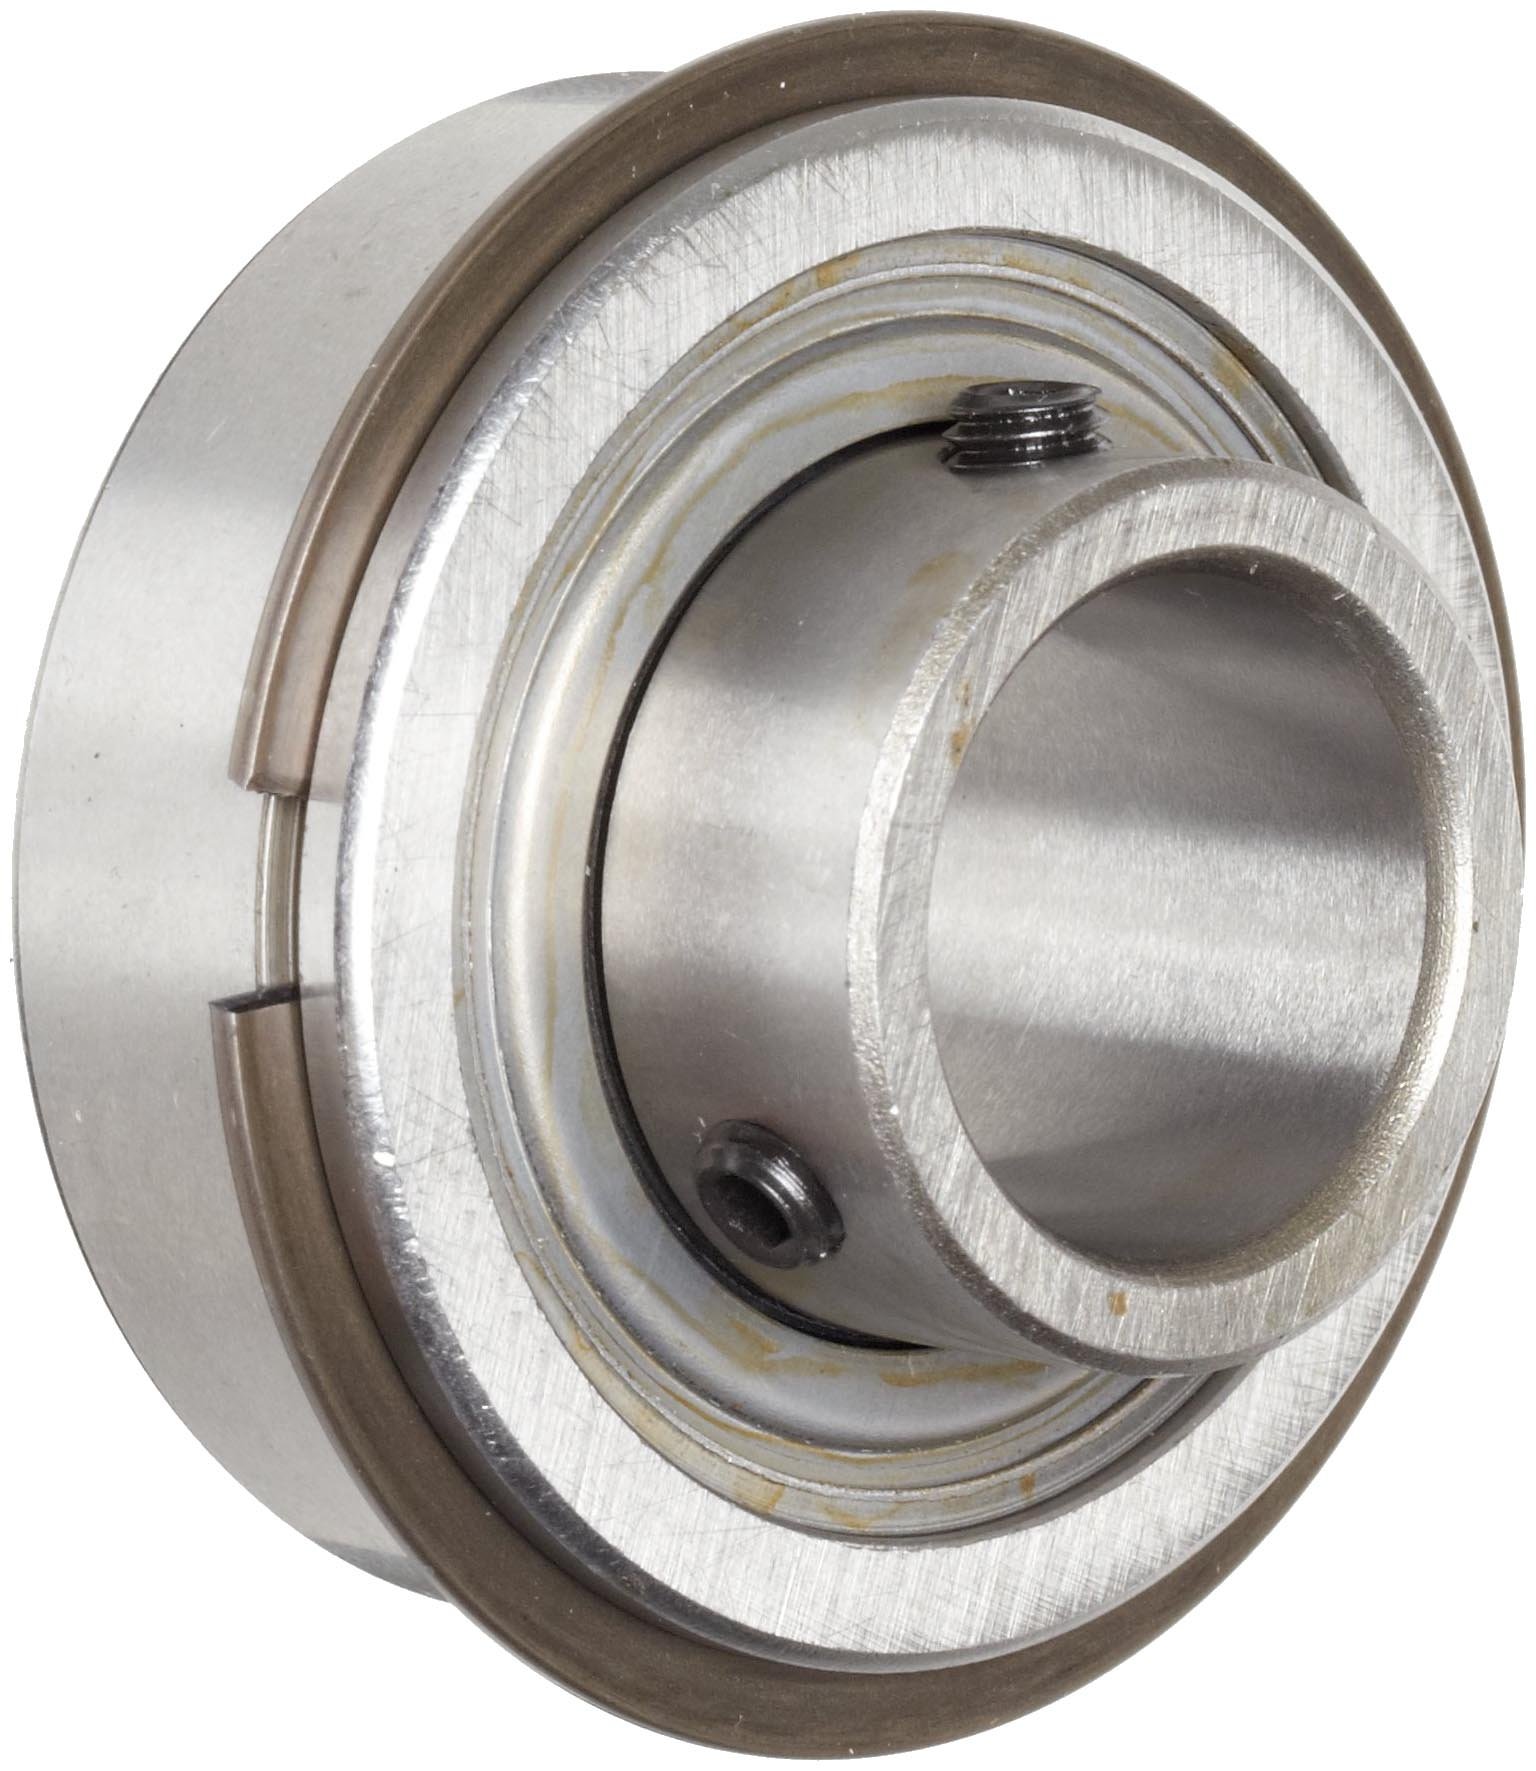 LYNX Bearing Aldebaran 50/51(2015) ceramic/stainless steel bearing